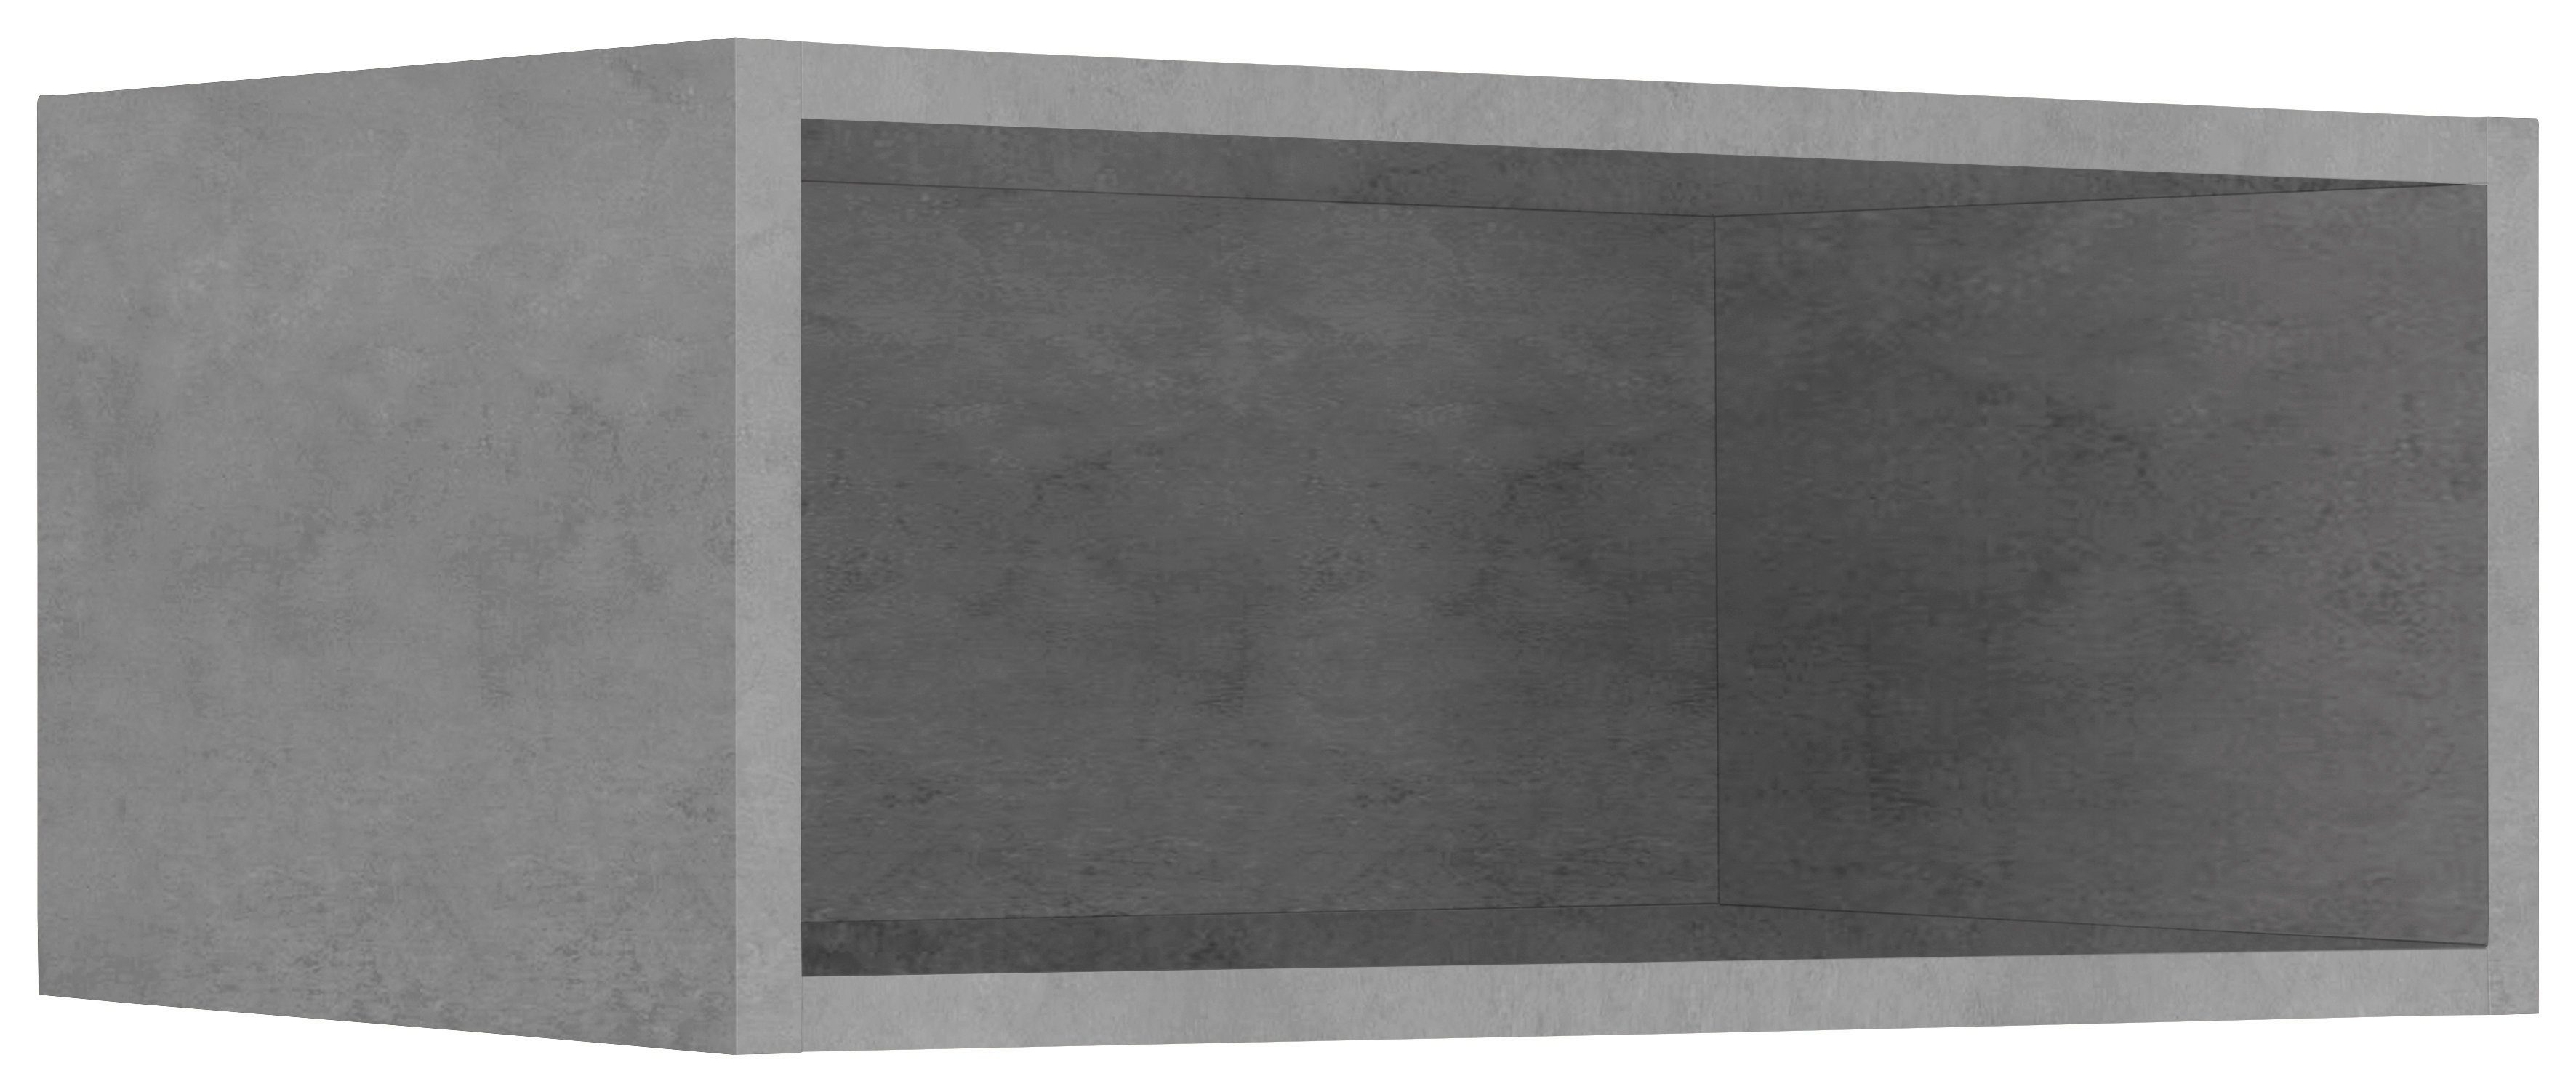 wiho Küchen Hängeregal Flexi2, Breite 50 cm, Maße (B/T/H): 50/35/21,5 cm